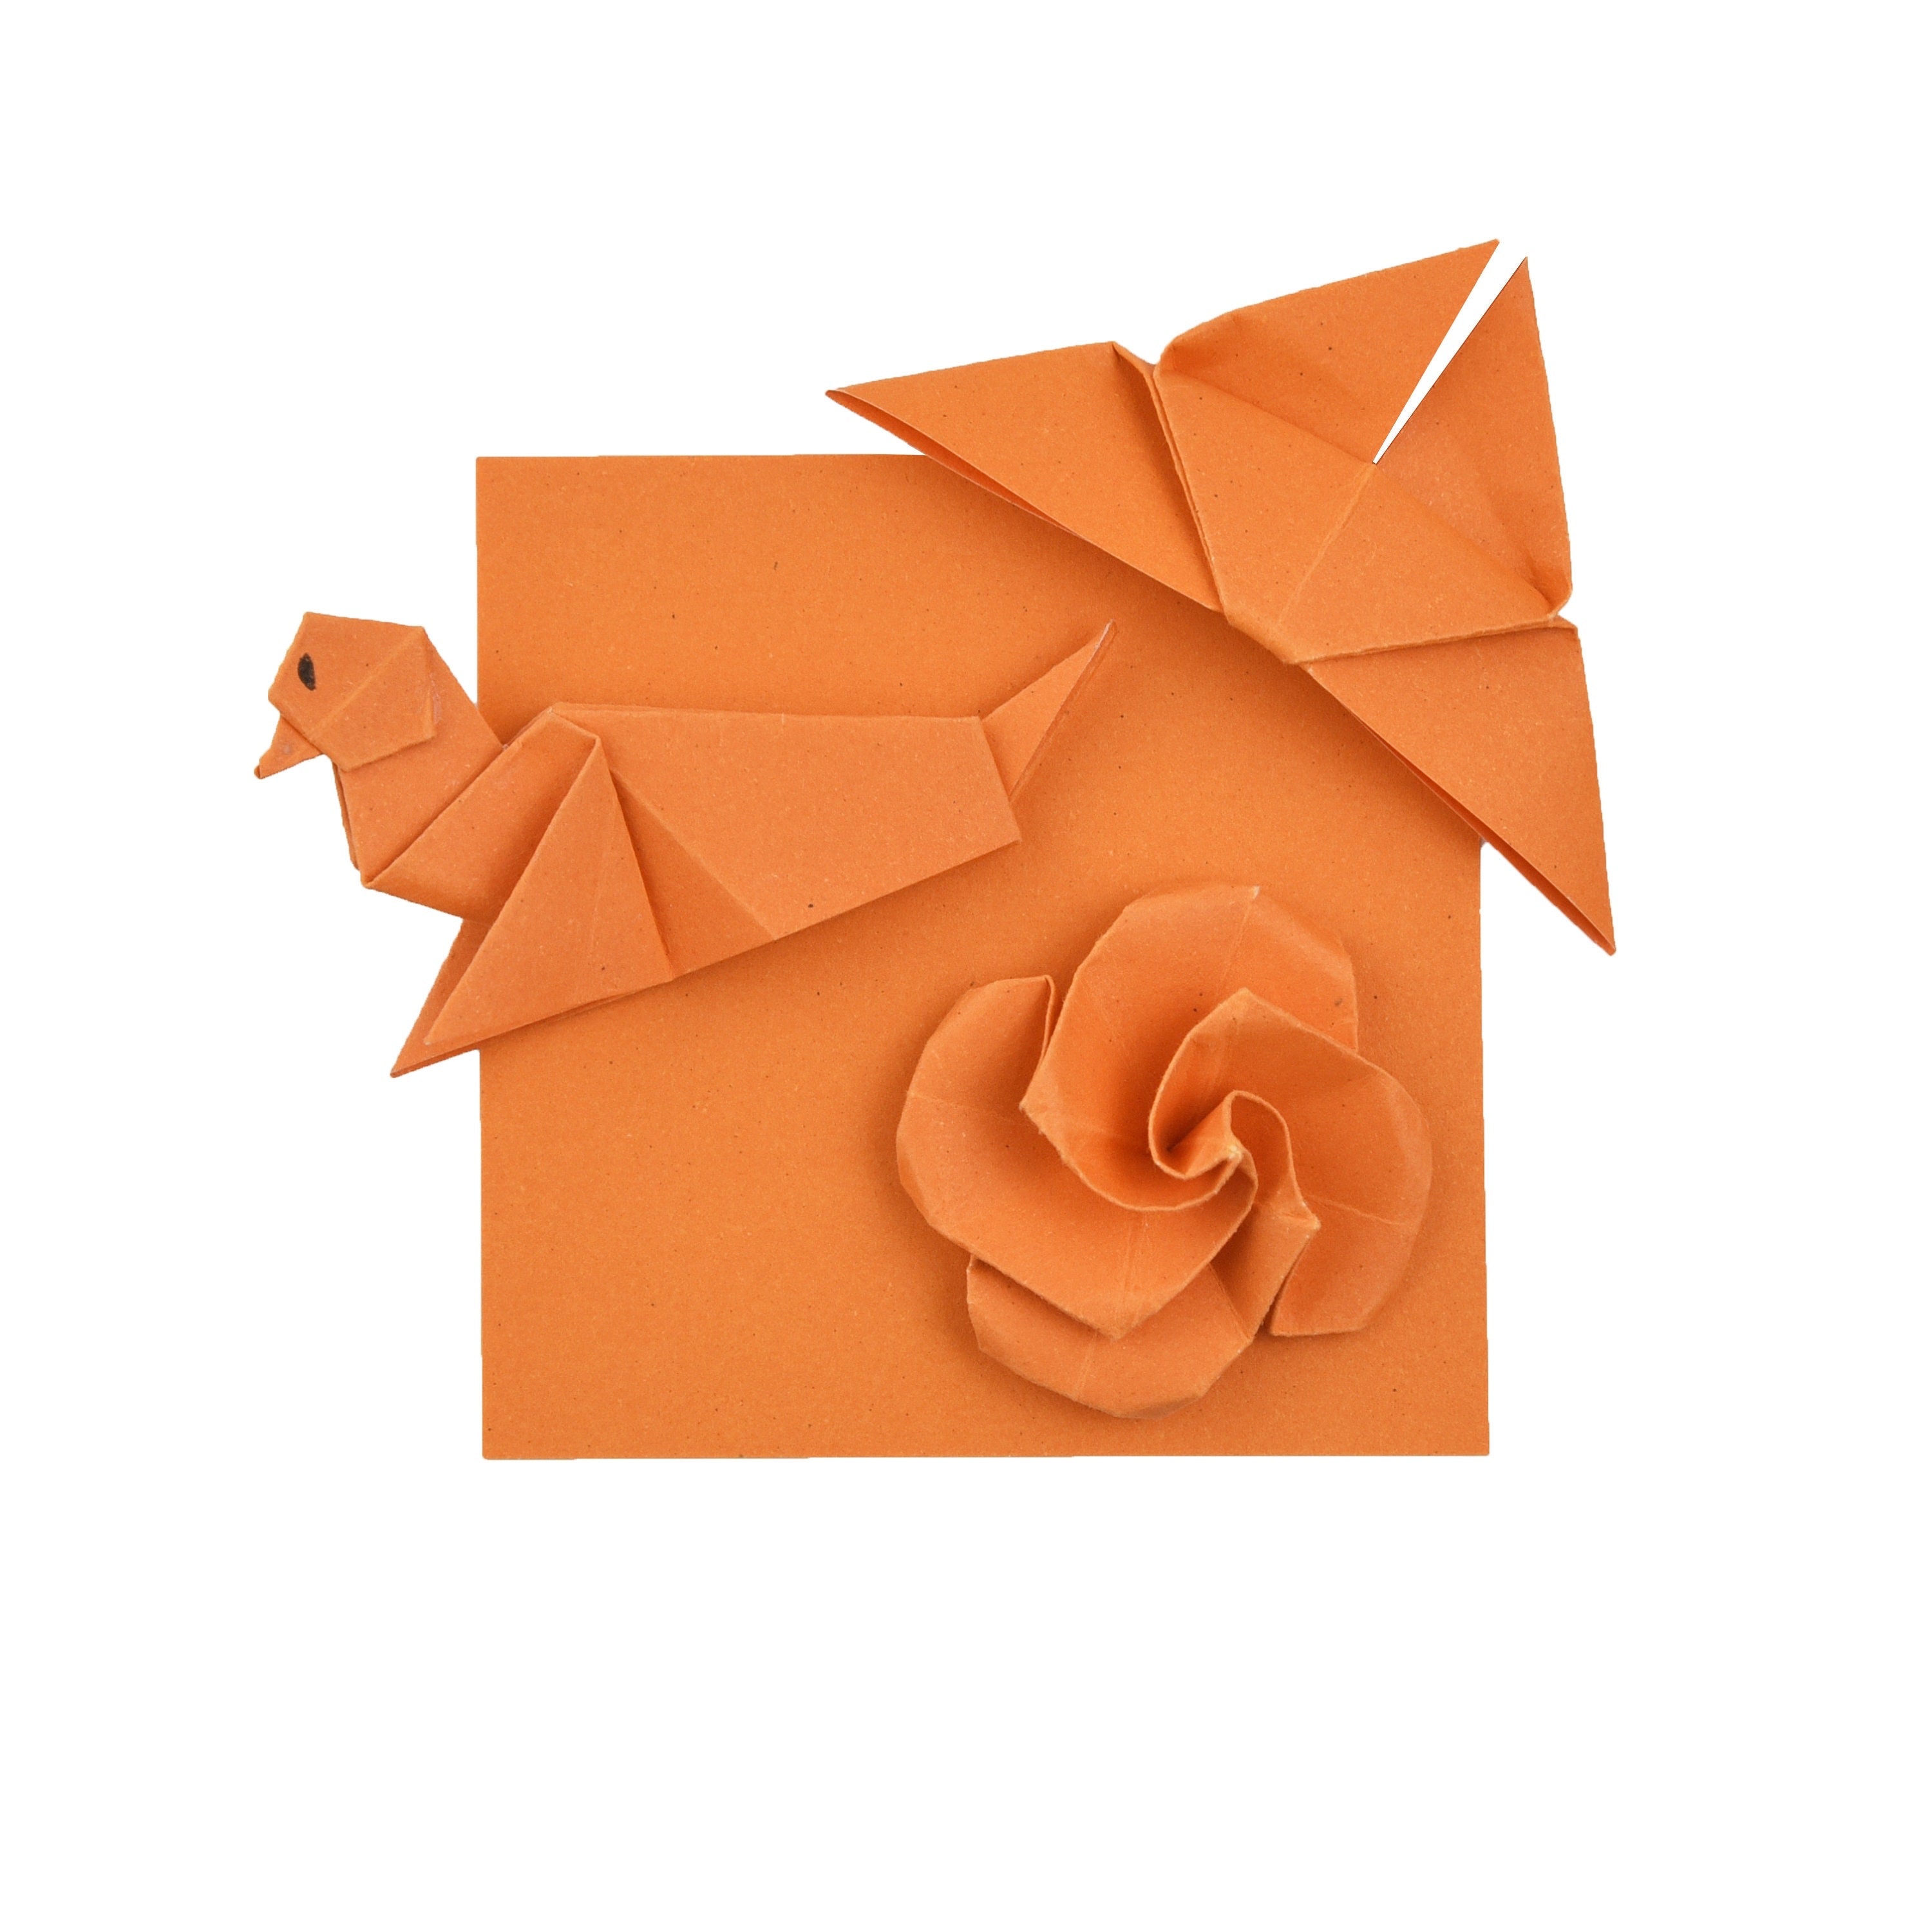 100 Hojas de Papel Origami - 3x3 pulgadas - Paquete de Papel Cuadrado para Plegar, Grullas de Origami y Decoración - S03